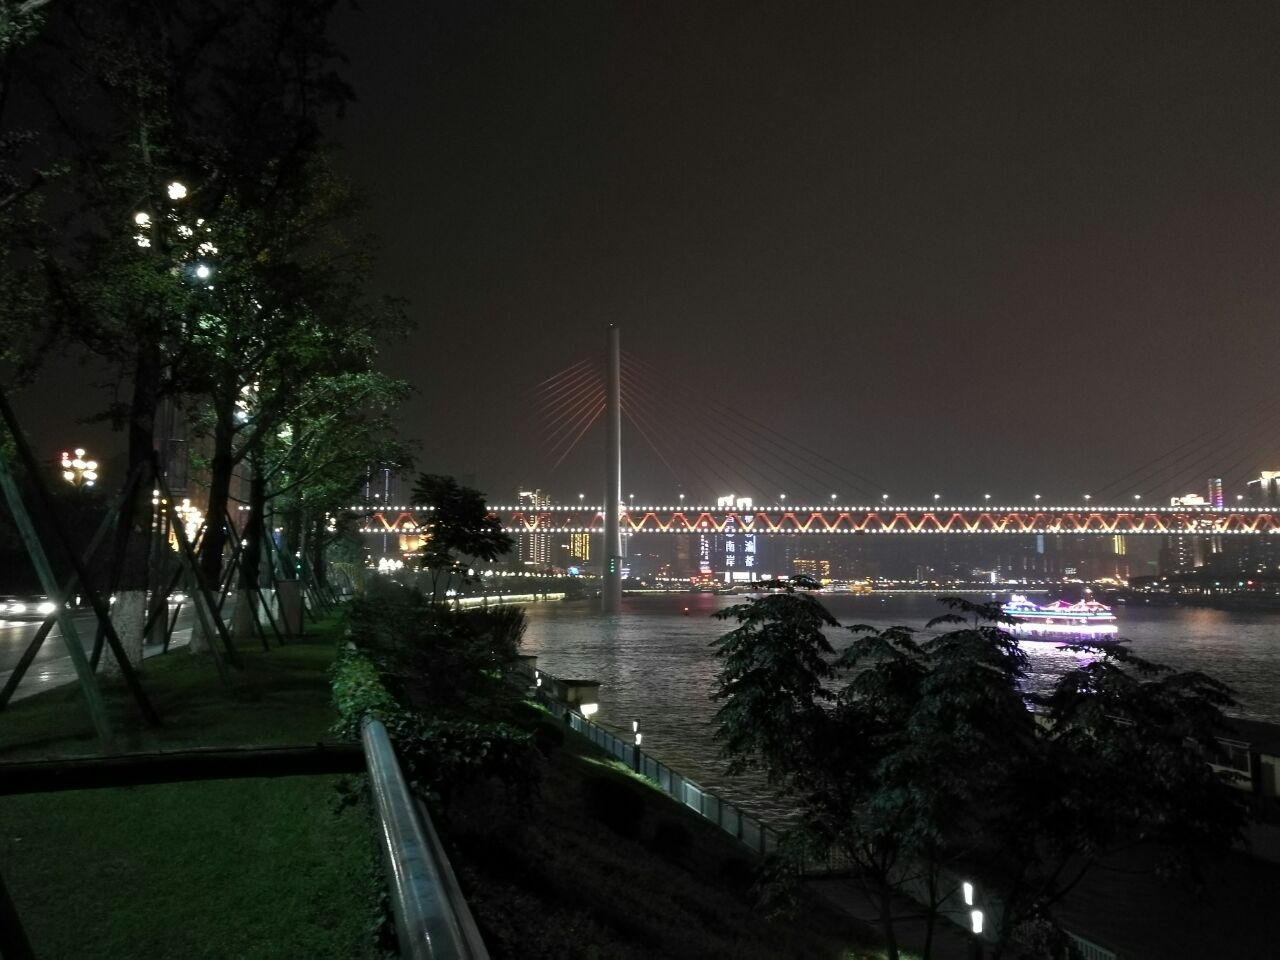 【携程攻略】重庆南滨路景点,南滨路夜景还是美不胜收的 规划现代的的南岸区和对岸渝中半岛的老城…